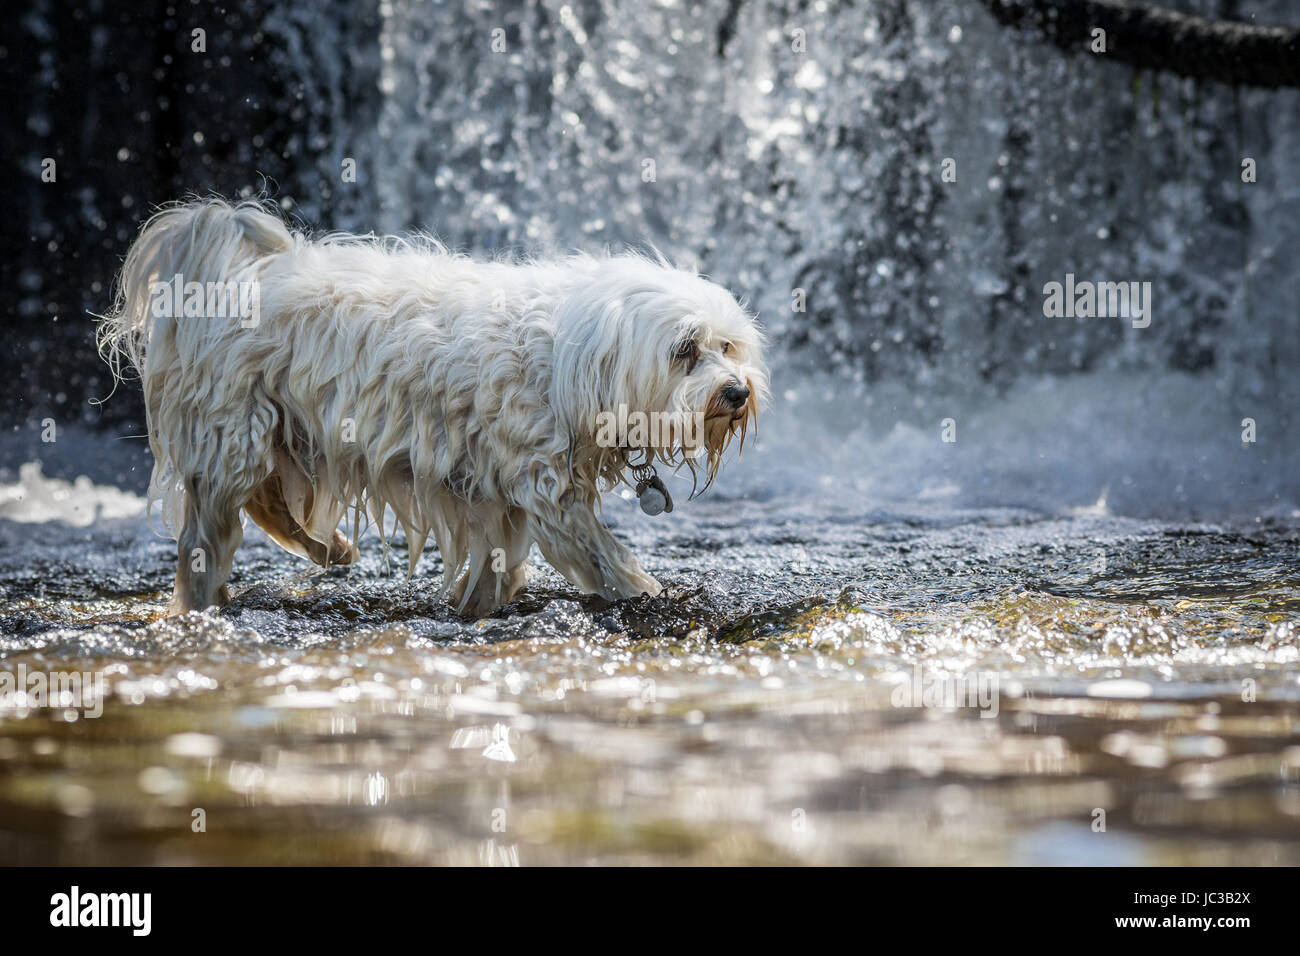 Kleiner weißer Hund geht durch das Wasser im Hintergrund ein kleiner Wasserfall. Stock Photo